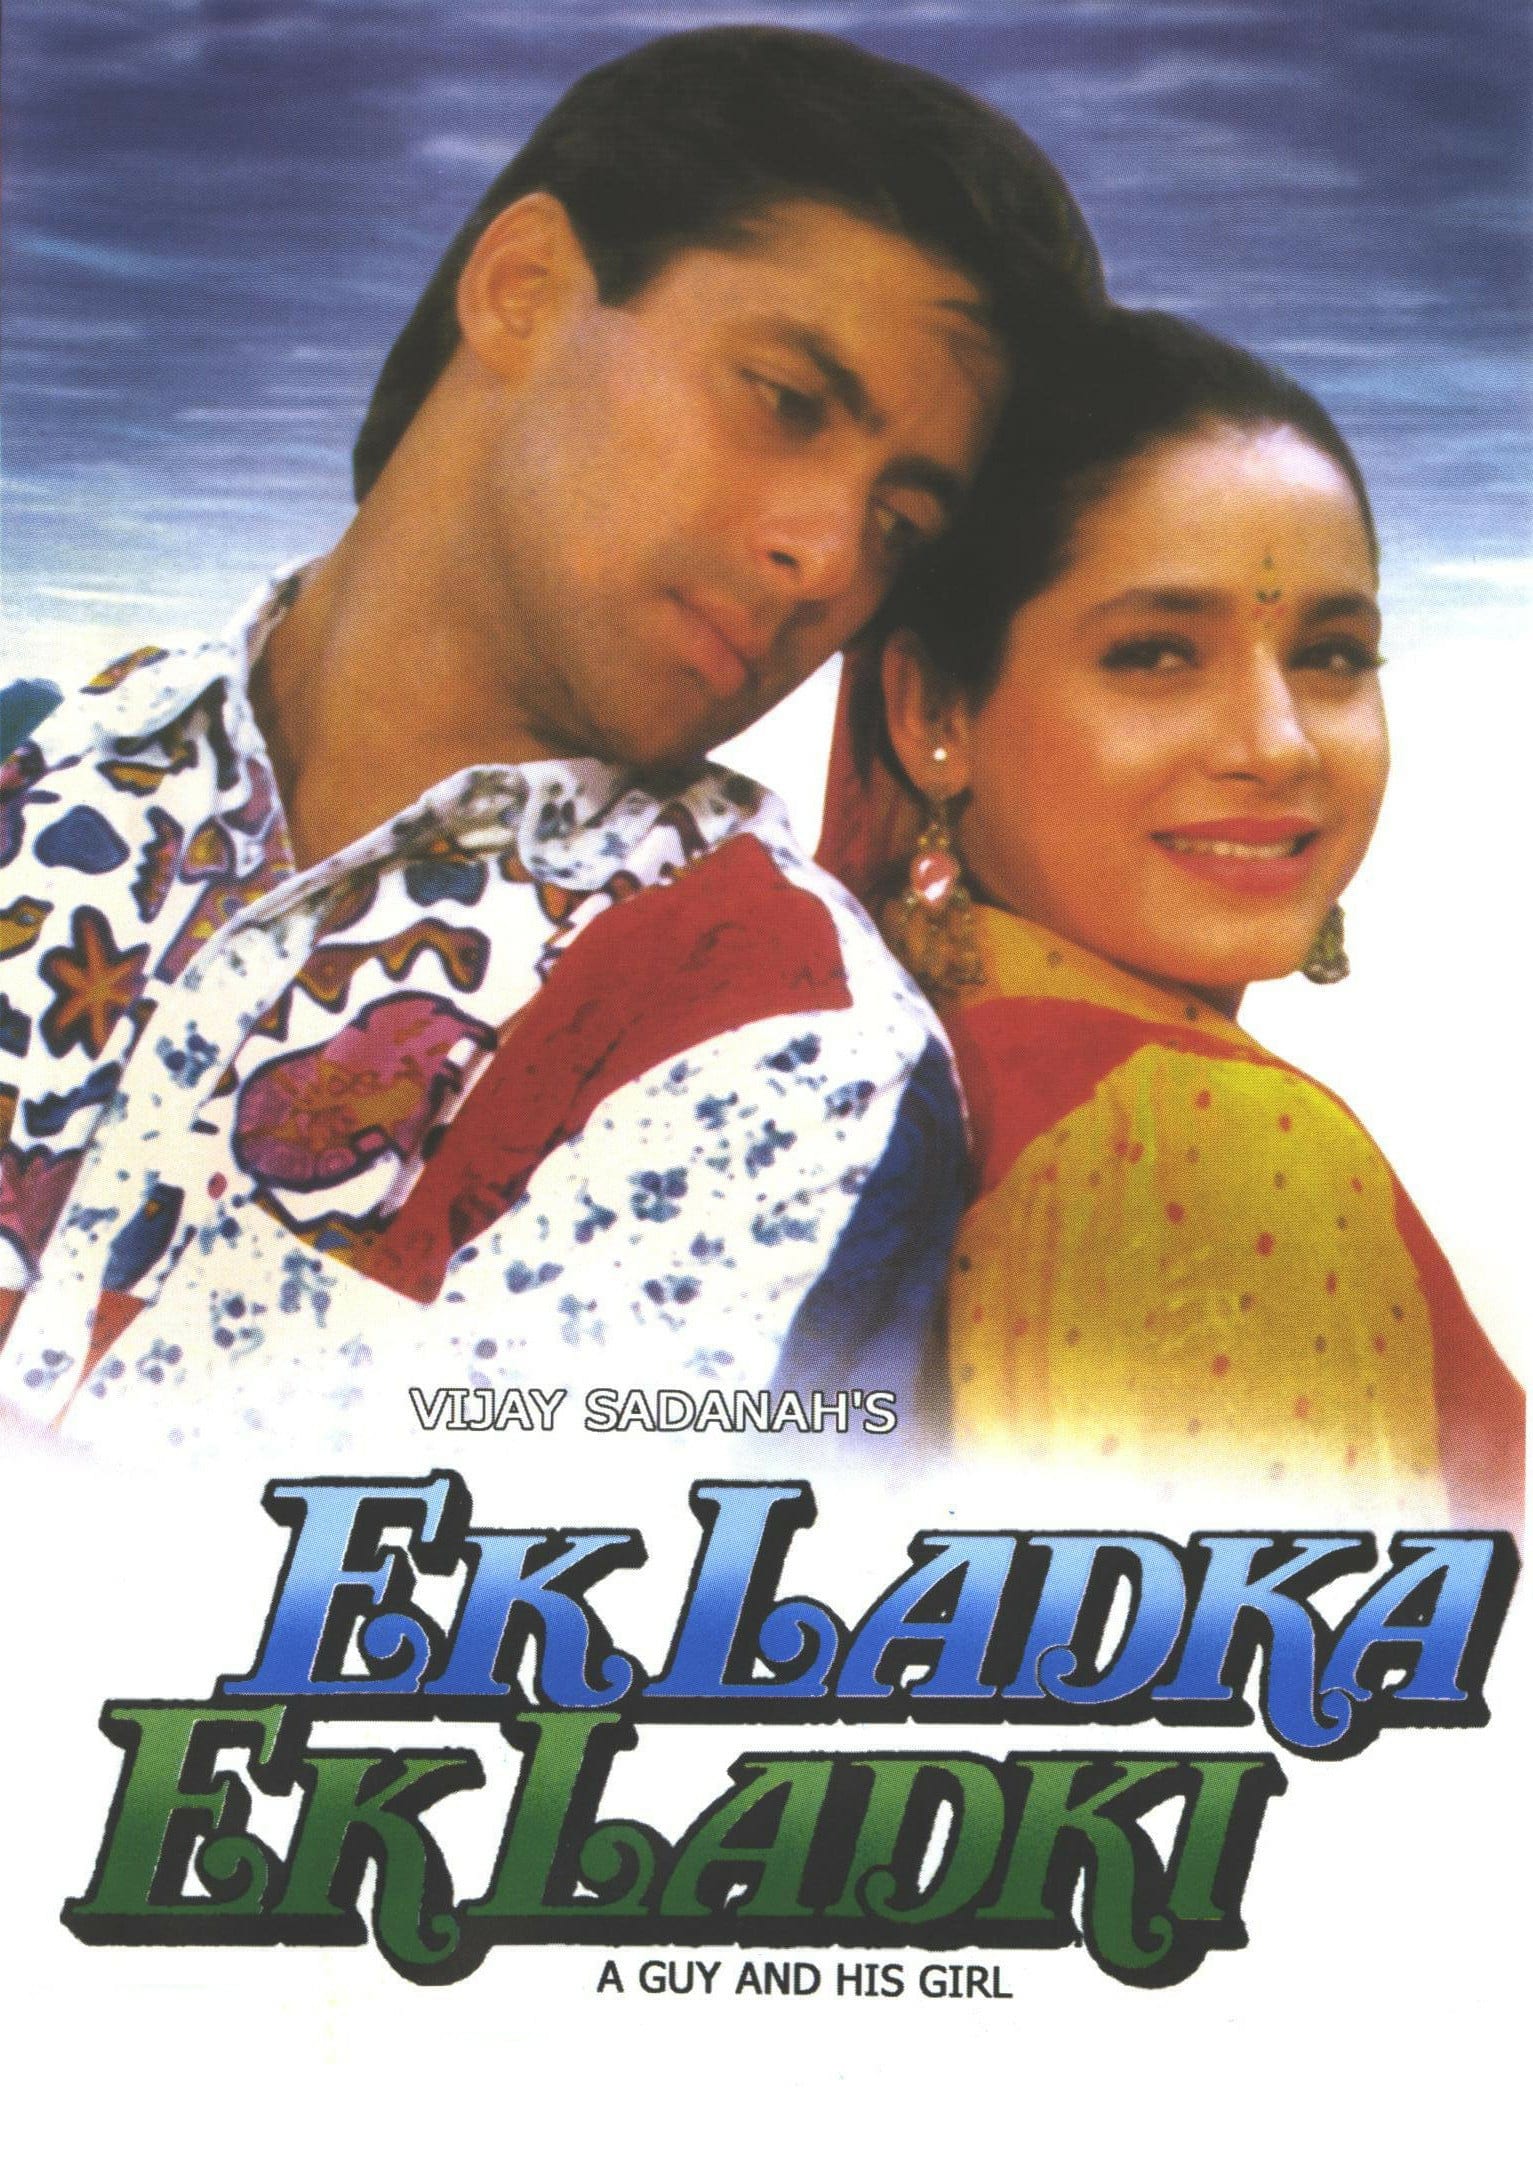 Poster for the movie "Ek Ladka Ek Ladki"